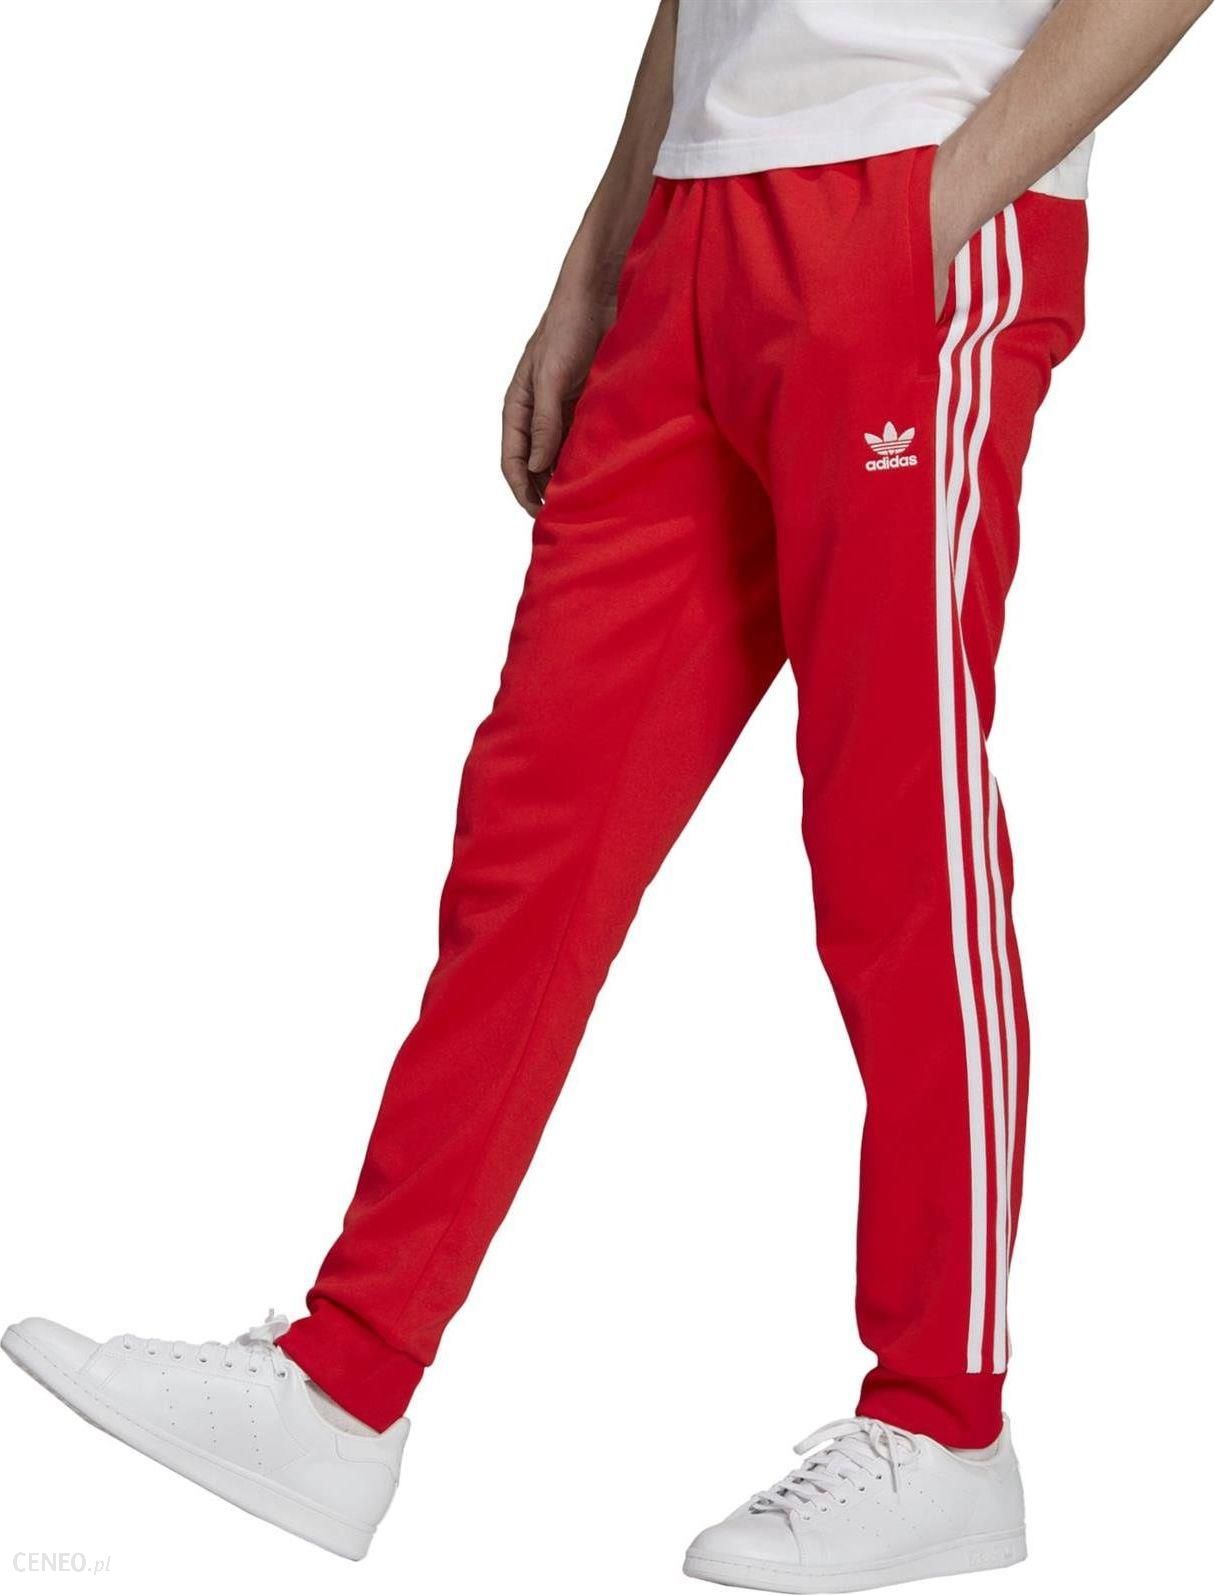 Slump sufficient breast Adidas Originals Spodnie dresowe męskie adidas Originals SST czerwone  H06713 XL - Ceny i opinie - Ceneo.pl